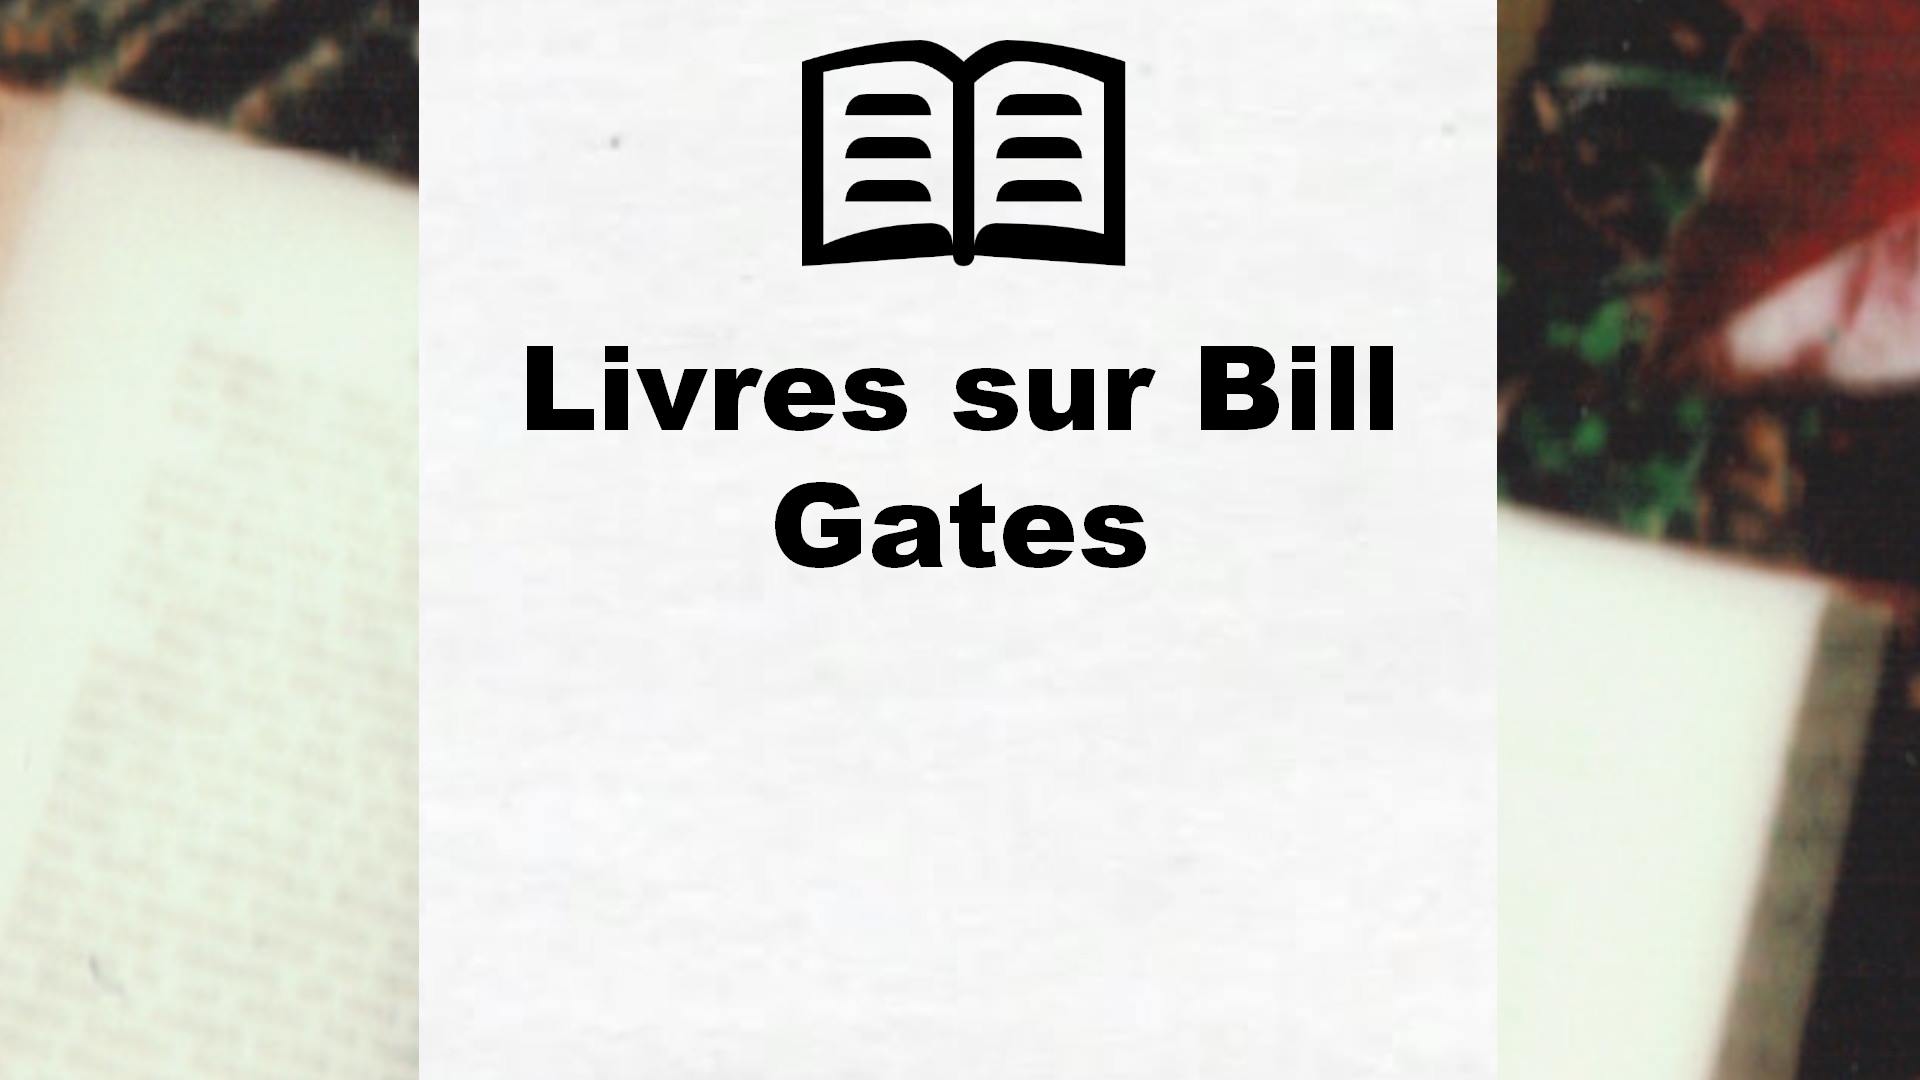 Livres sur Bill Gates